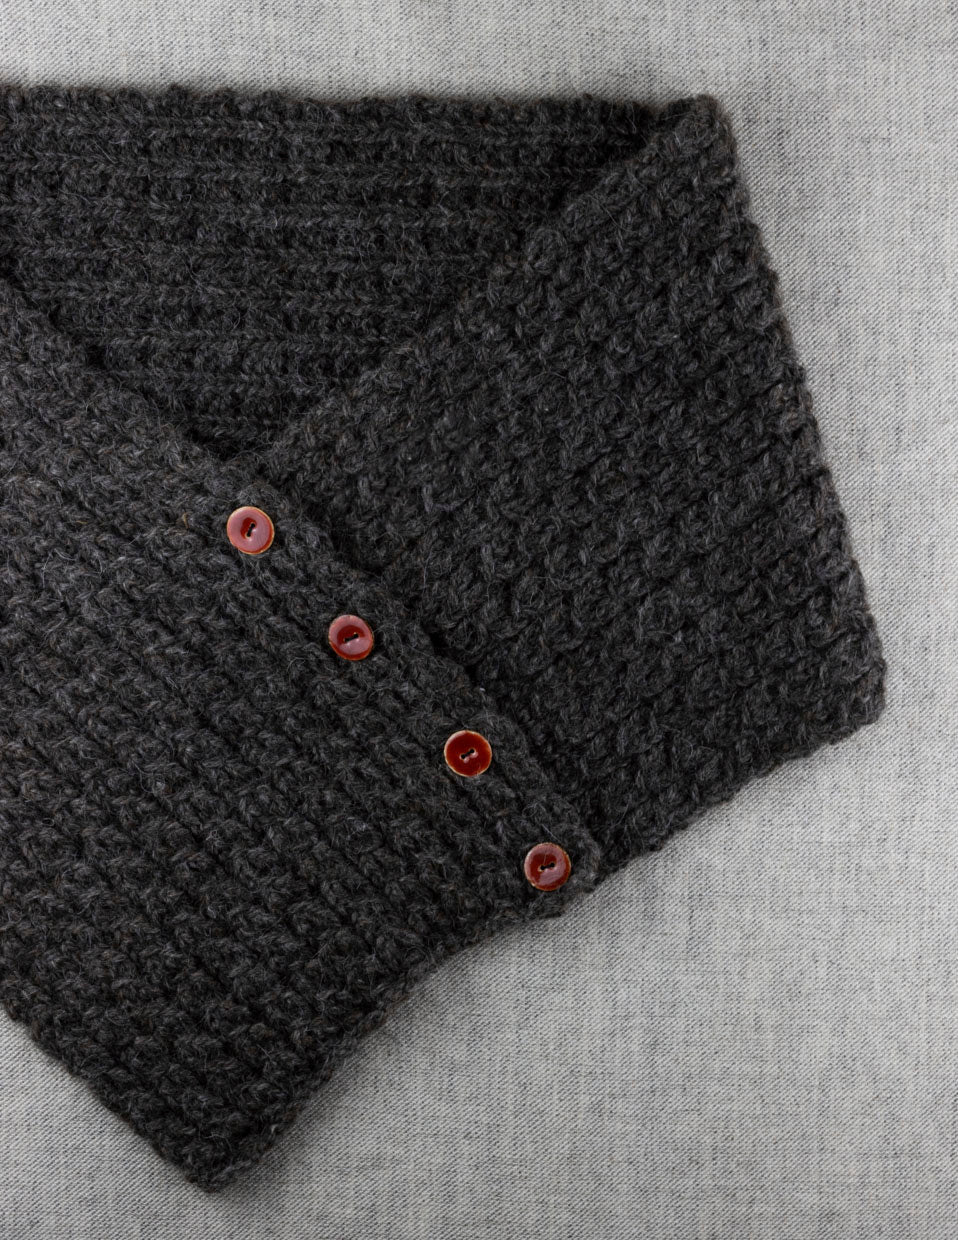 Tauverk shoulder warmer, knitting kit